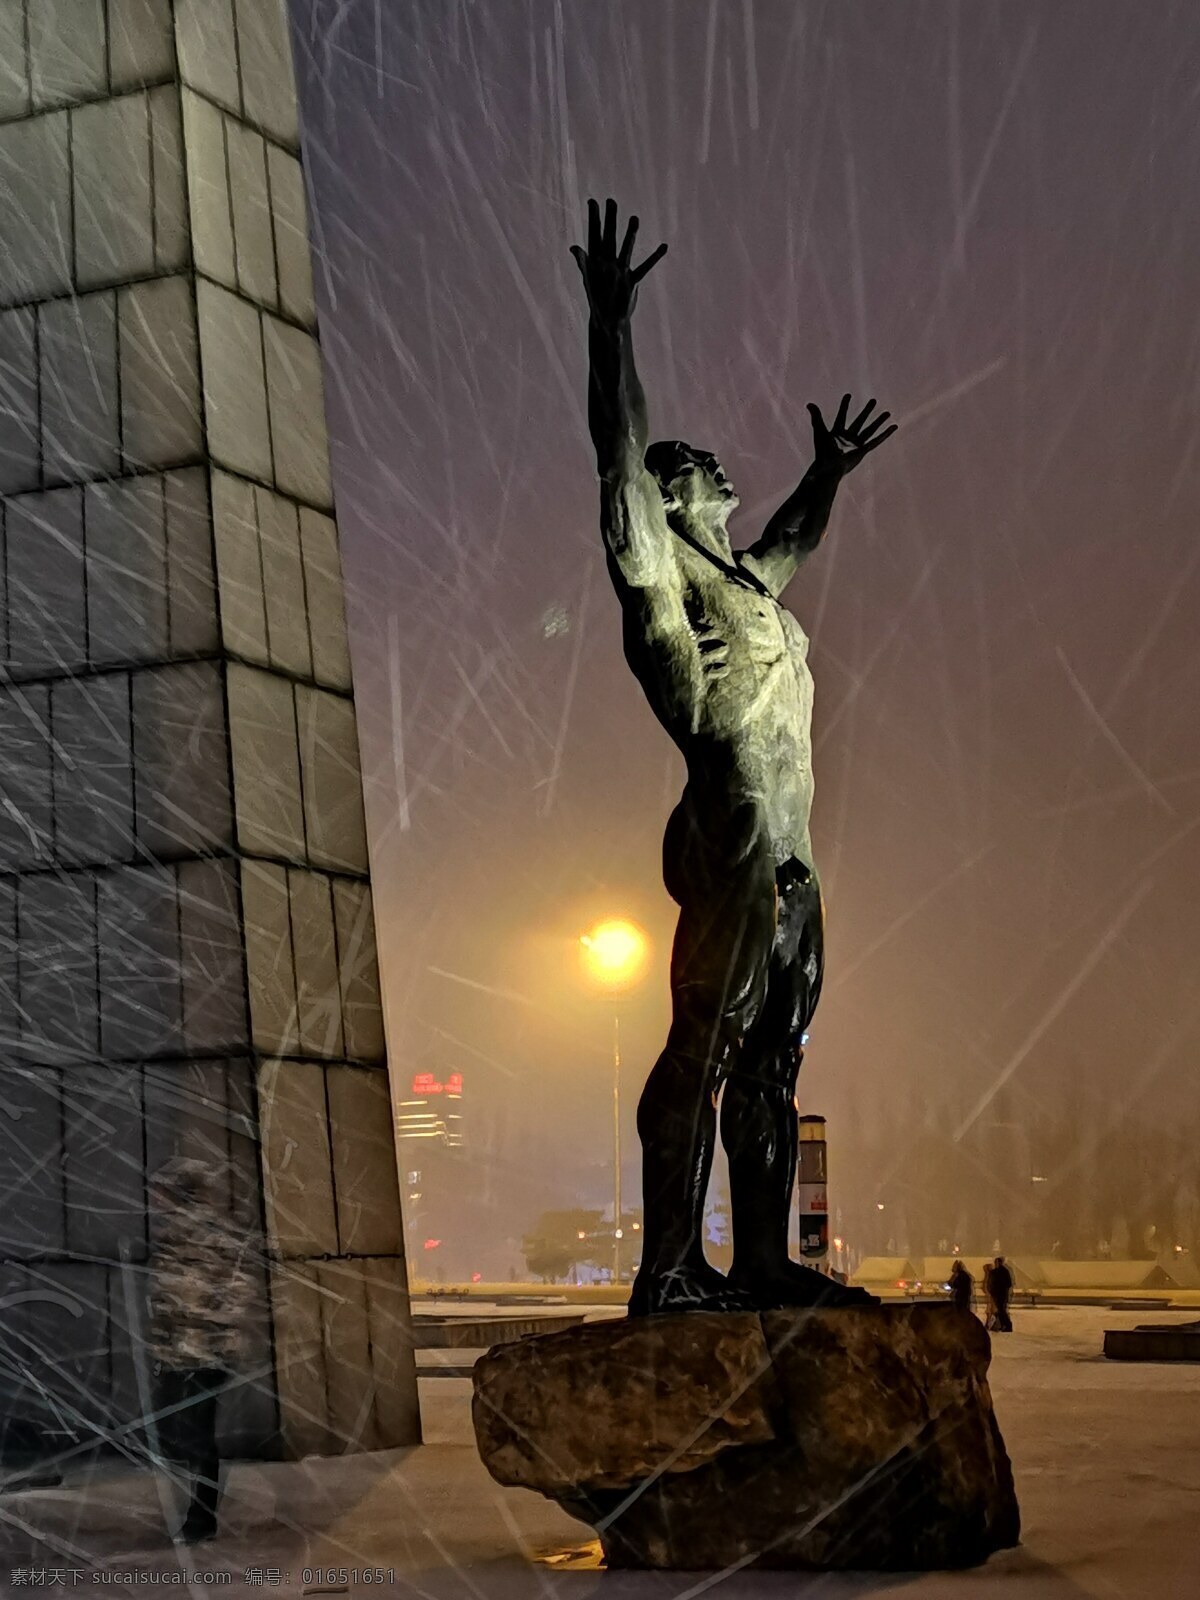 长春 地标 解放广场 雕塑 冰雪 冬季 旅游摄影 国内旅游